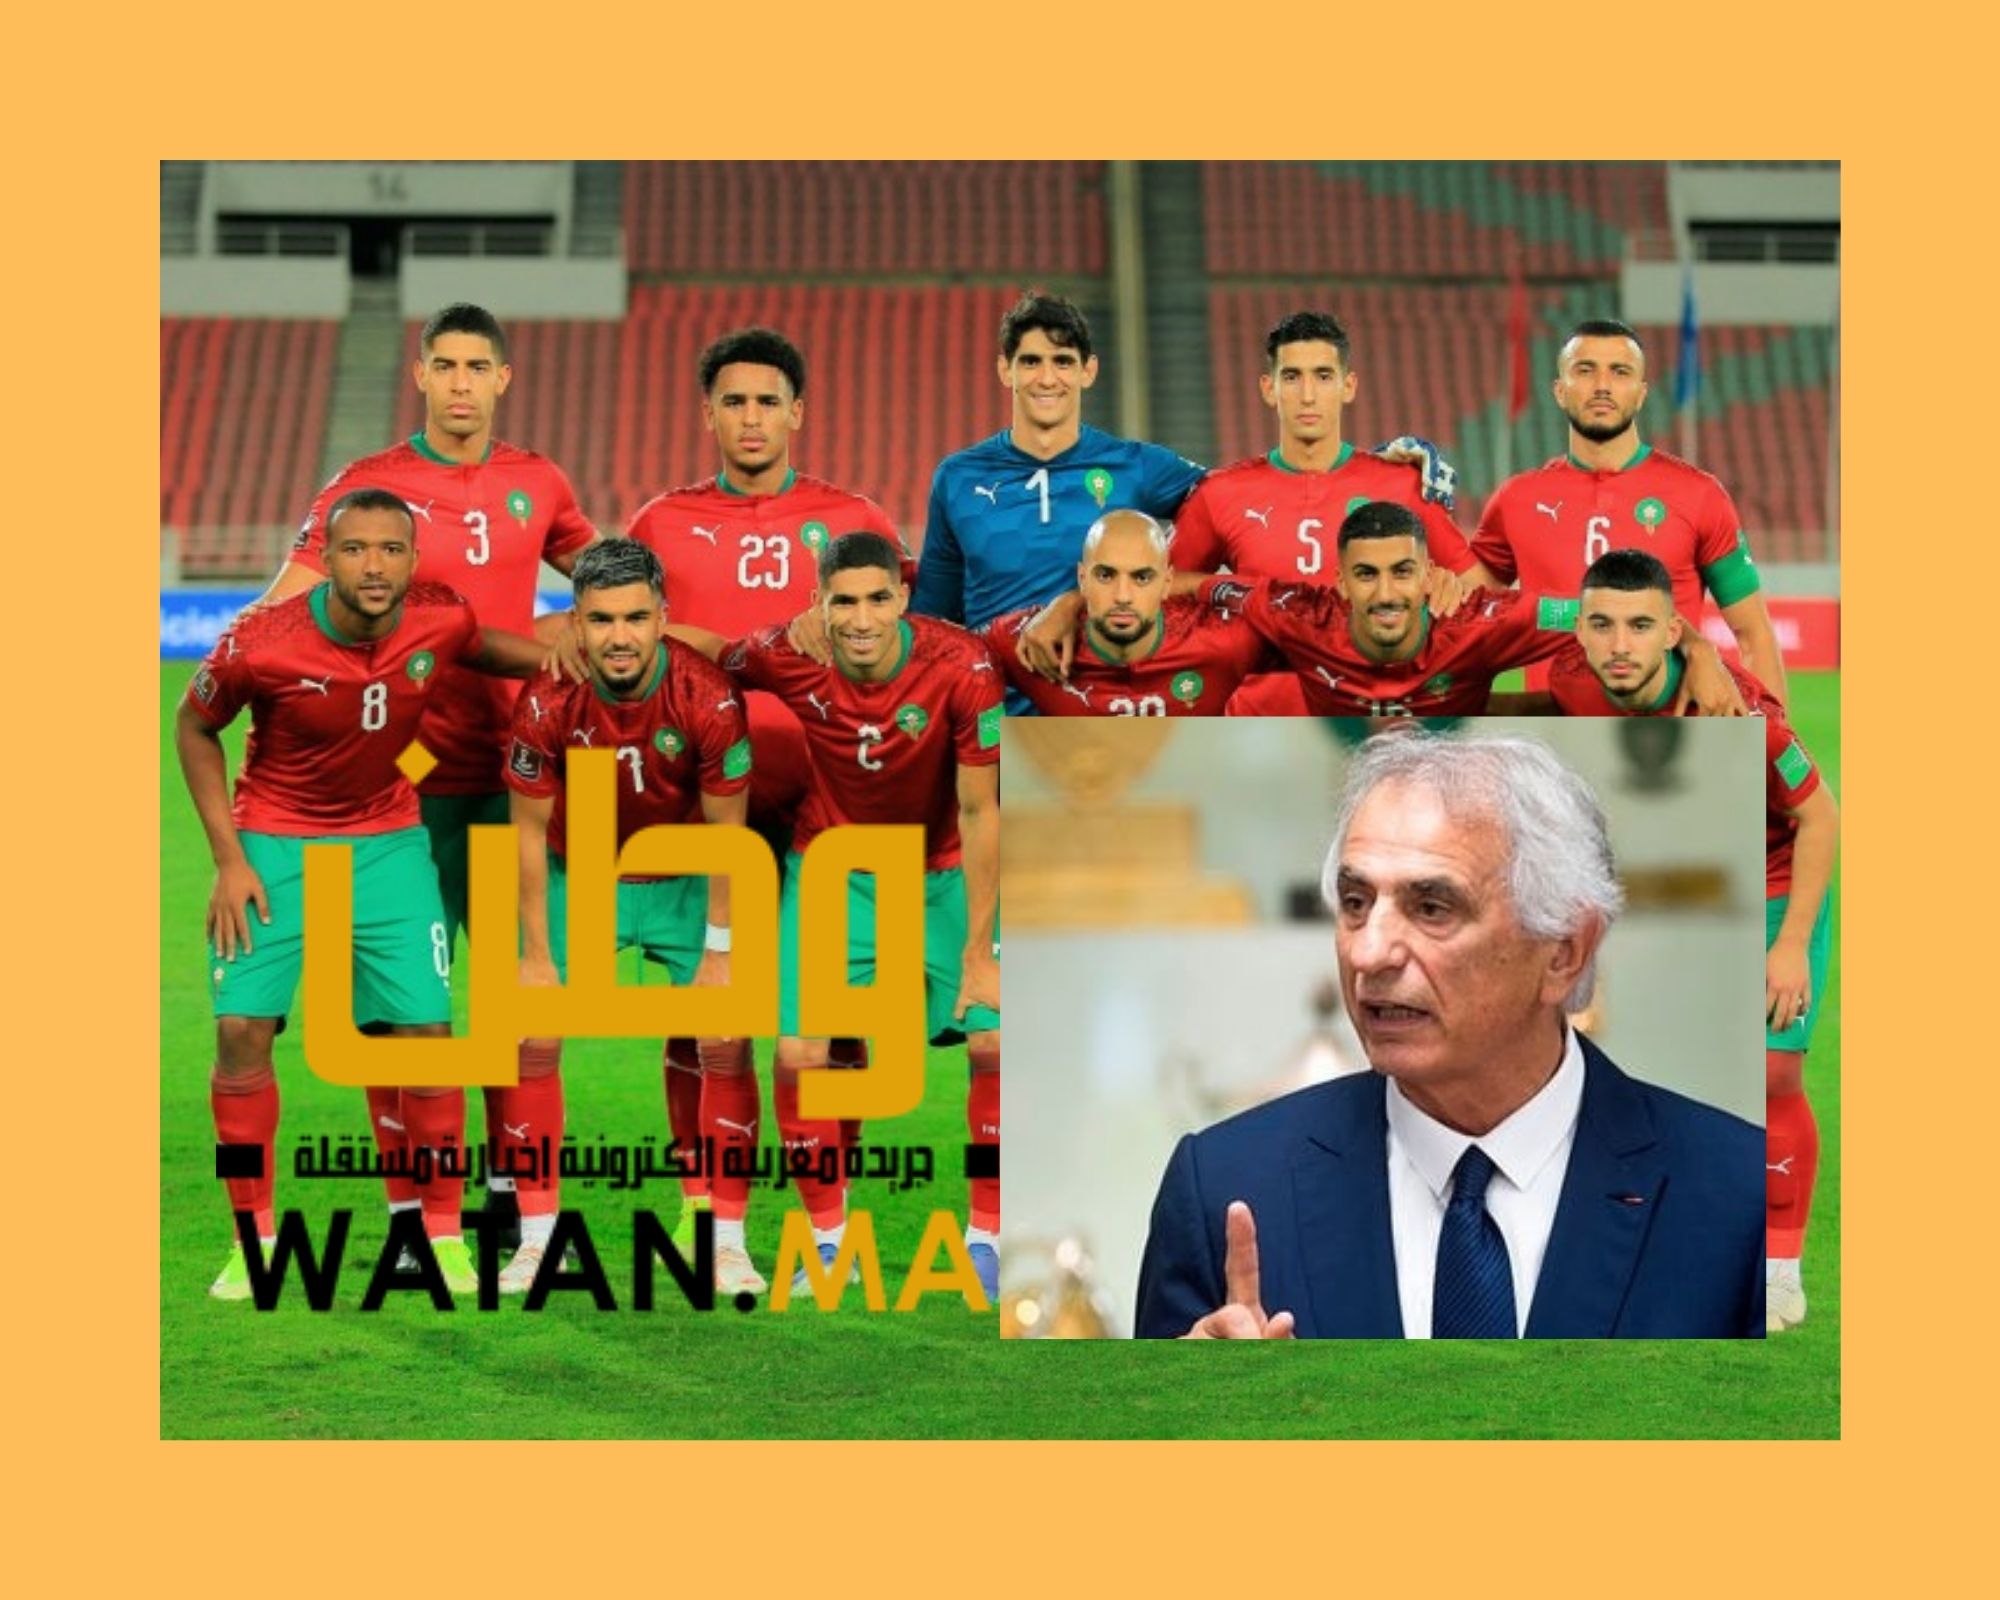 أخبار صادمة قبل مواجهة المنتخب المغربي للكونغو في تصفيات المونديال